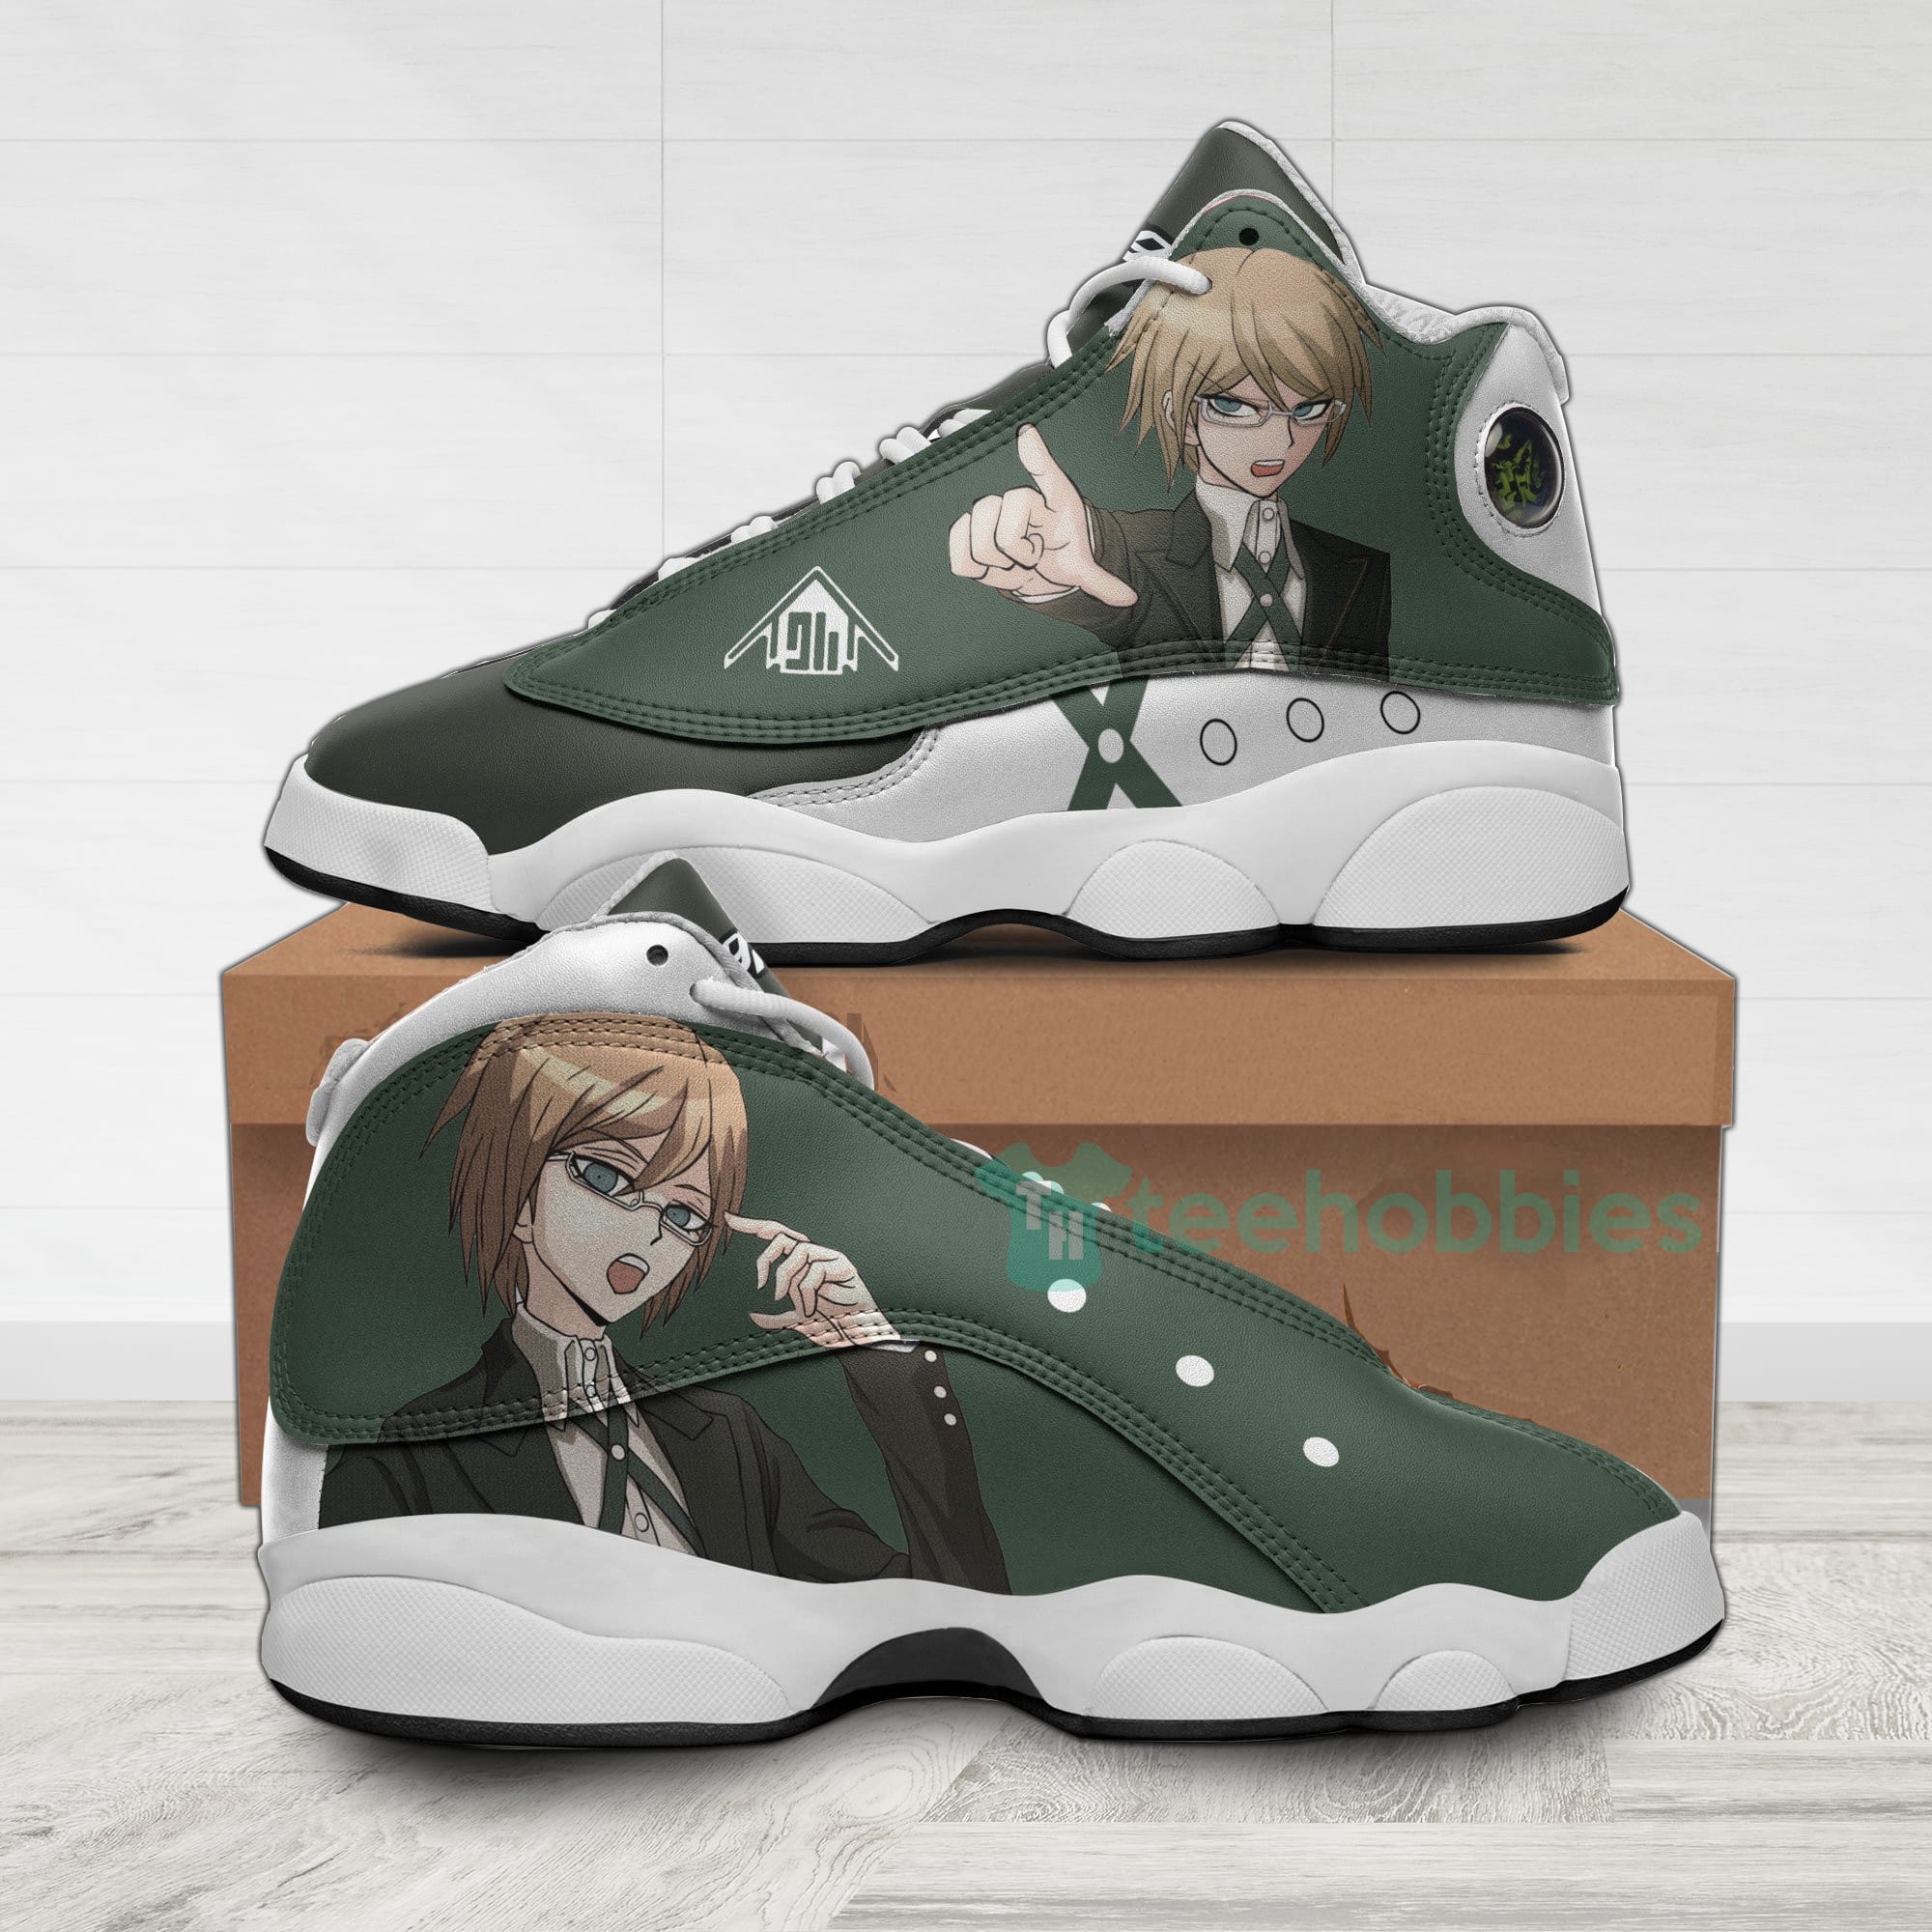 Byakuya Togami Custom Danganronpa Anime Air Jordan 13 Shoes